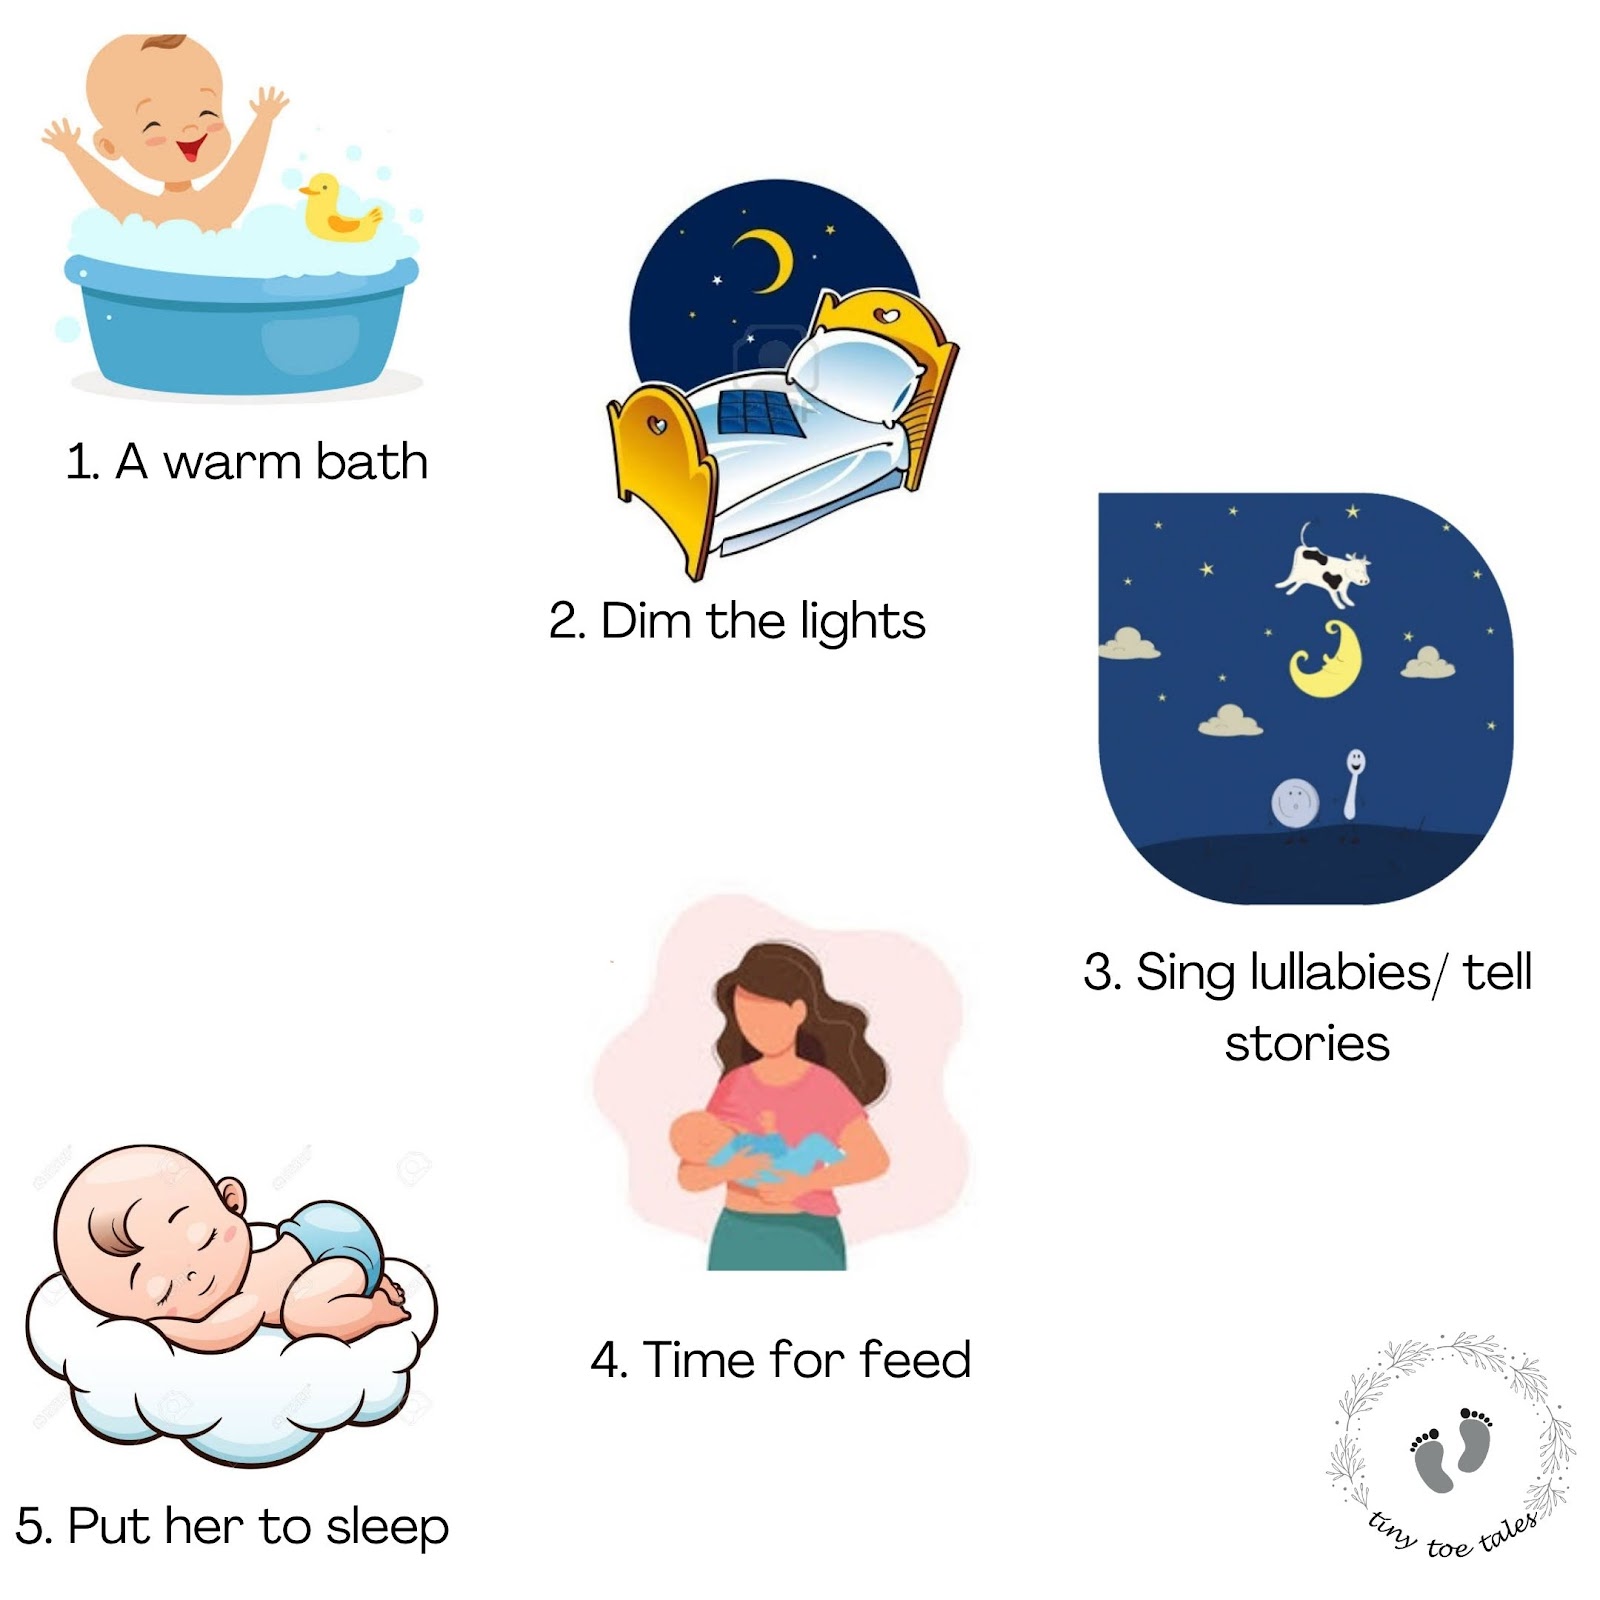 Bedtime routine/ sleep routine for newborn